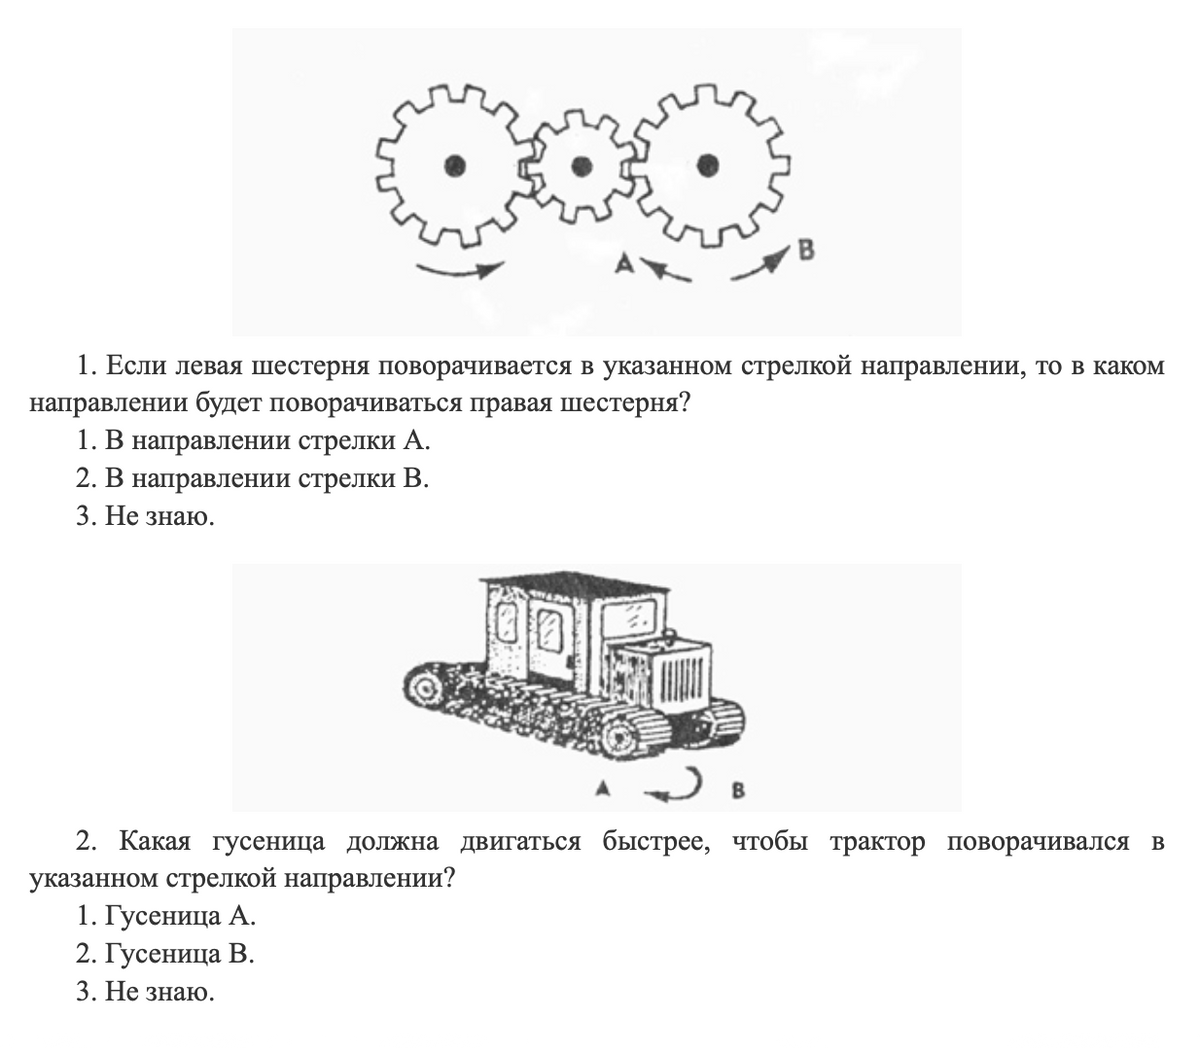 Примеры заданий из теста на выявление технических способностей. Источник: trudkirov.ru